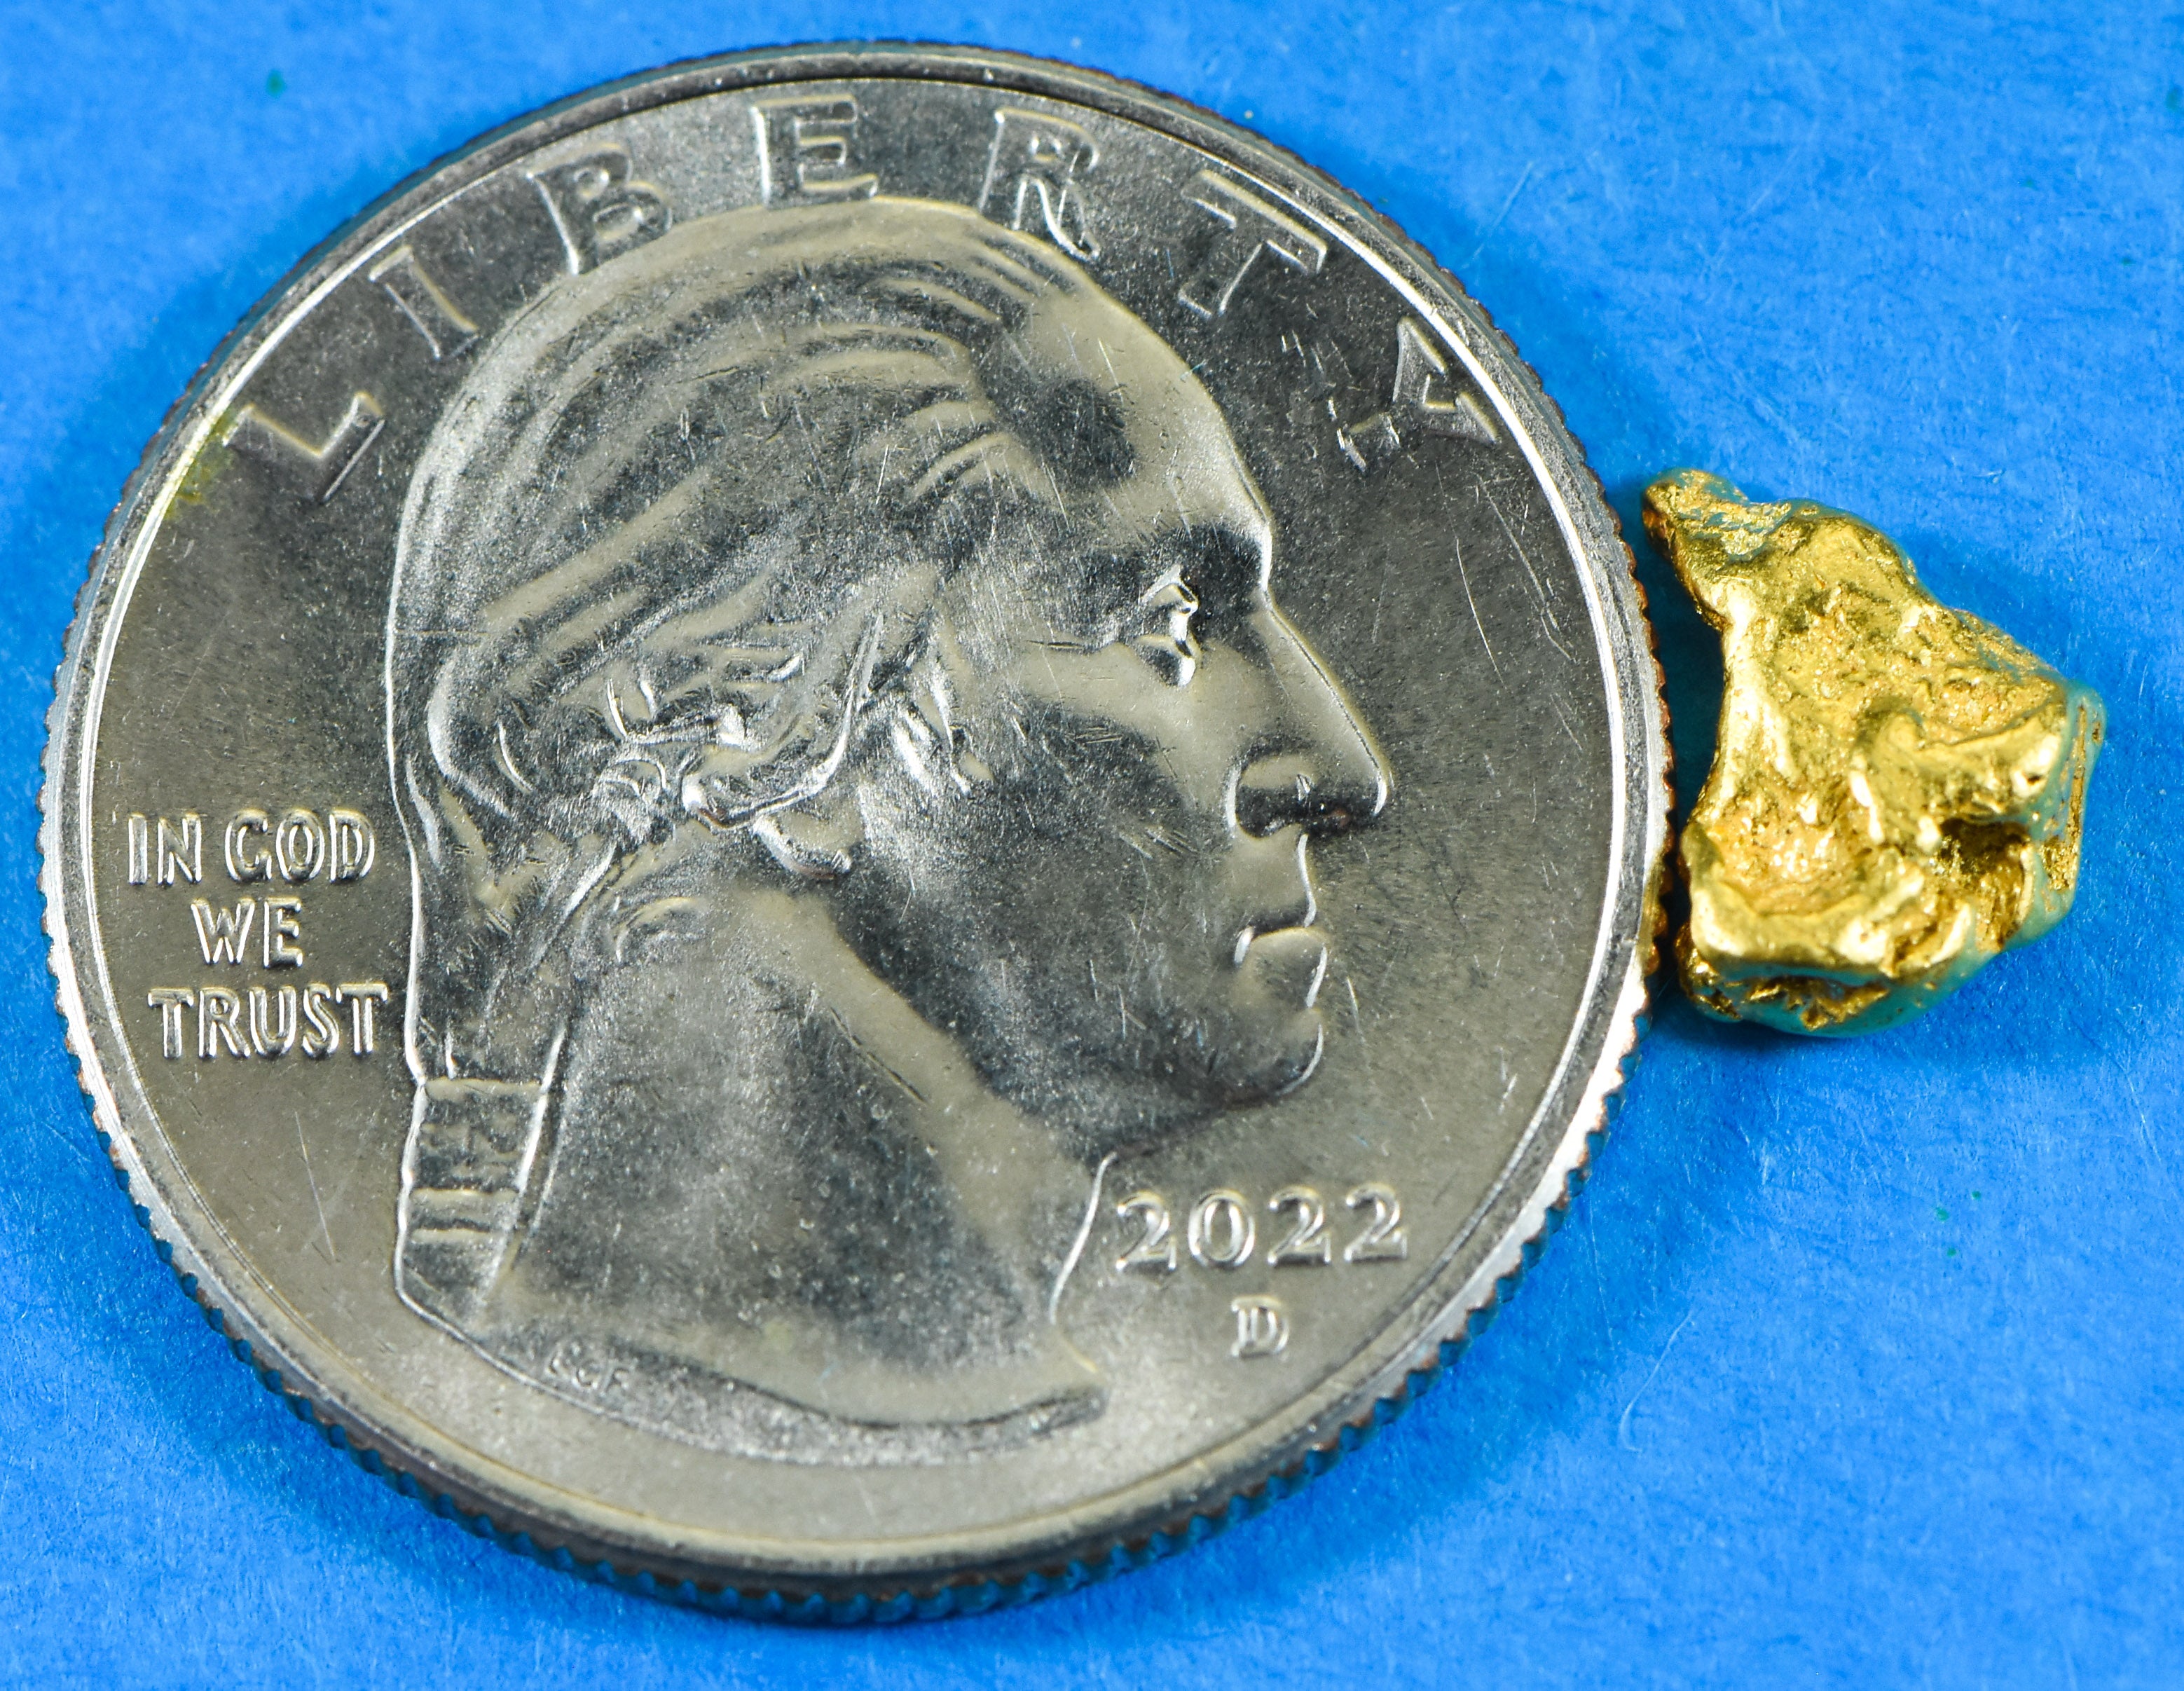 #59 Alaskan BC Natural Gold Nugget .84 Grams Genuine